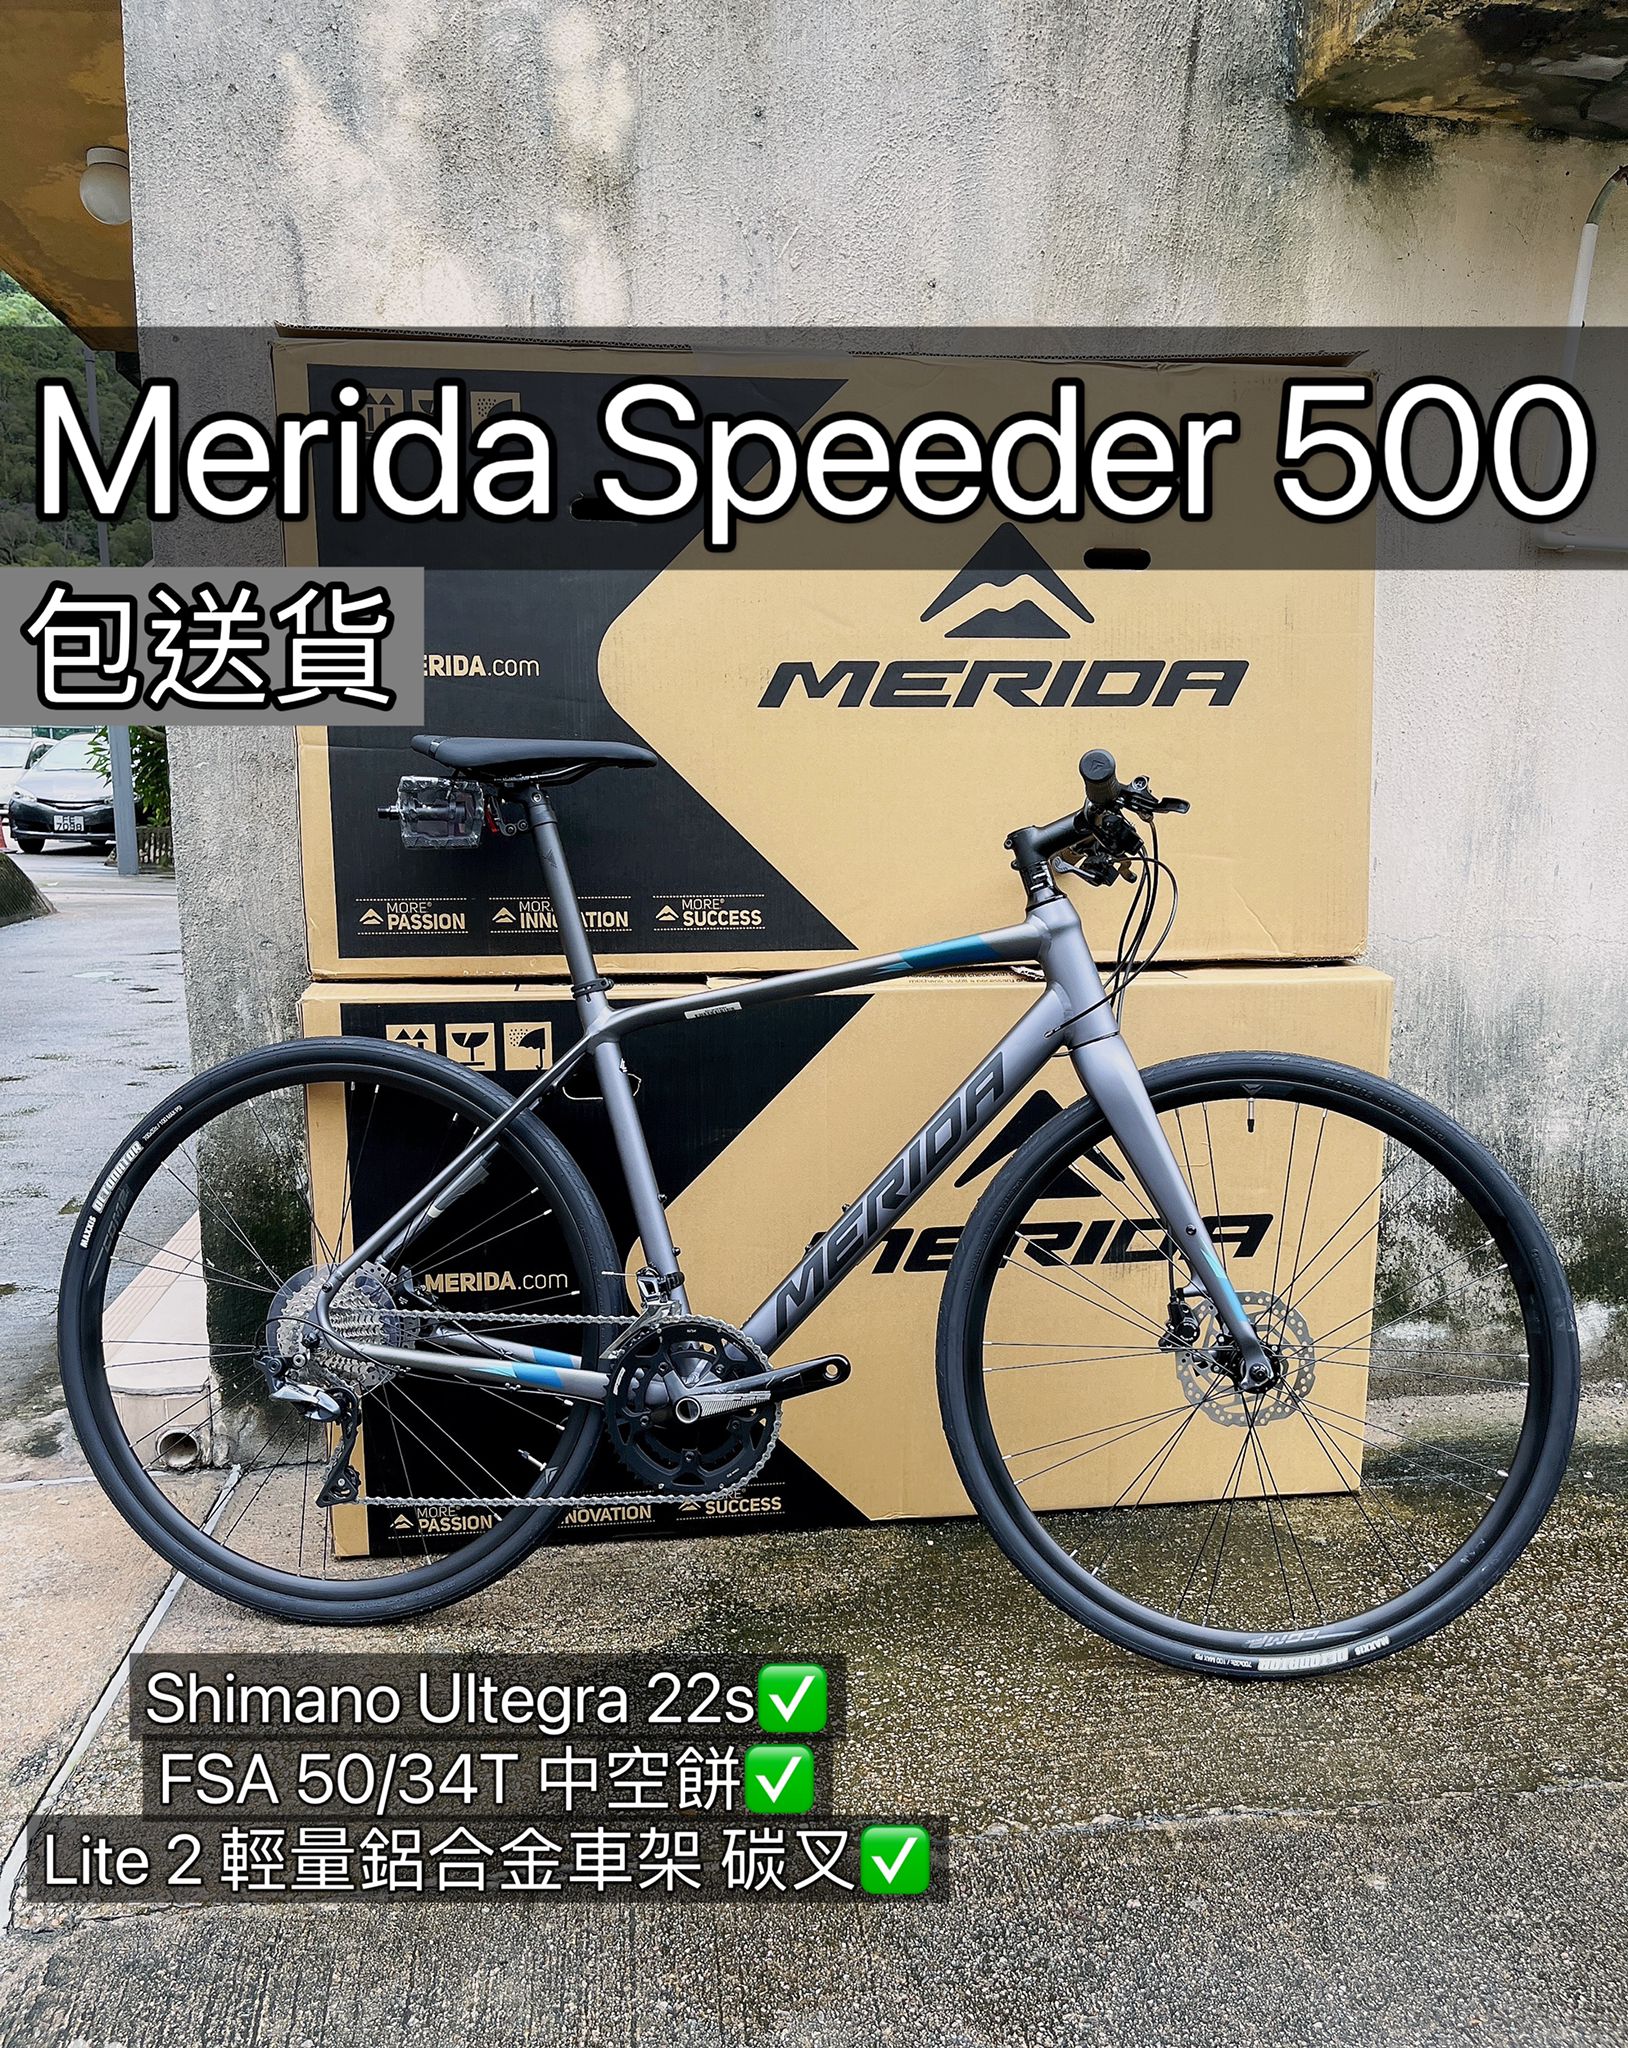  Speeder 500